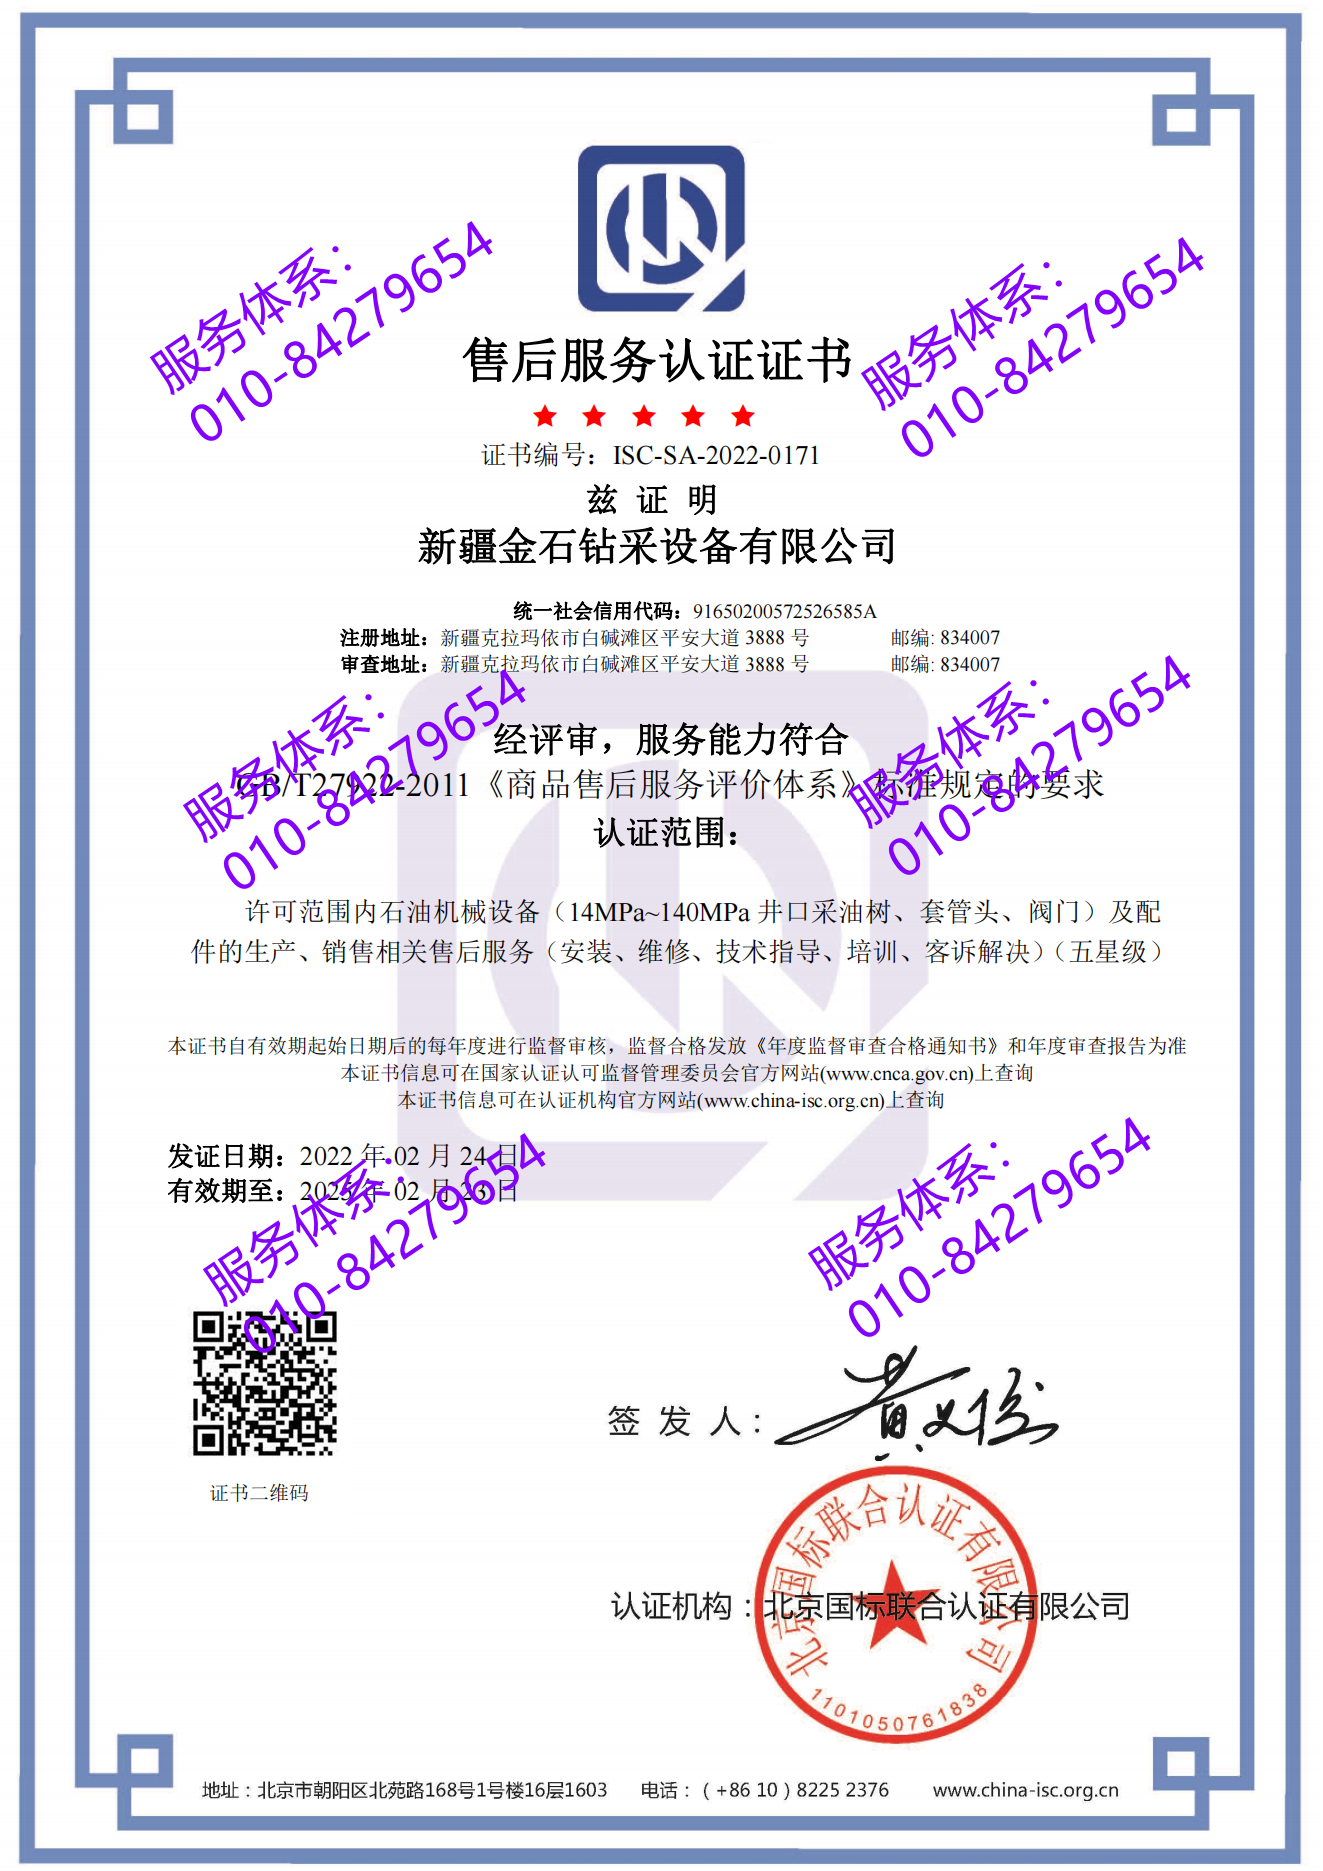 新疆金石钻采设备有限公司喜获五星 “售后服务认证证书”